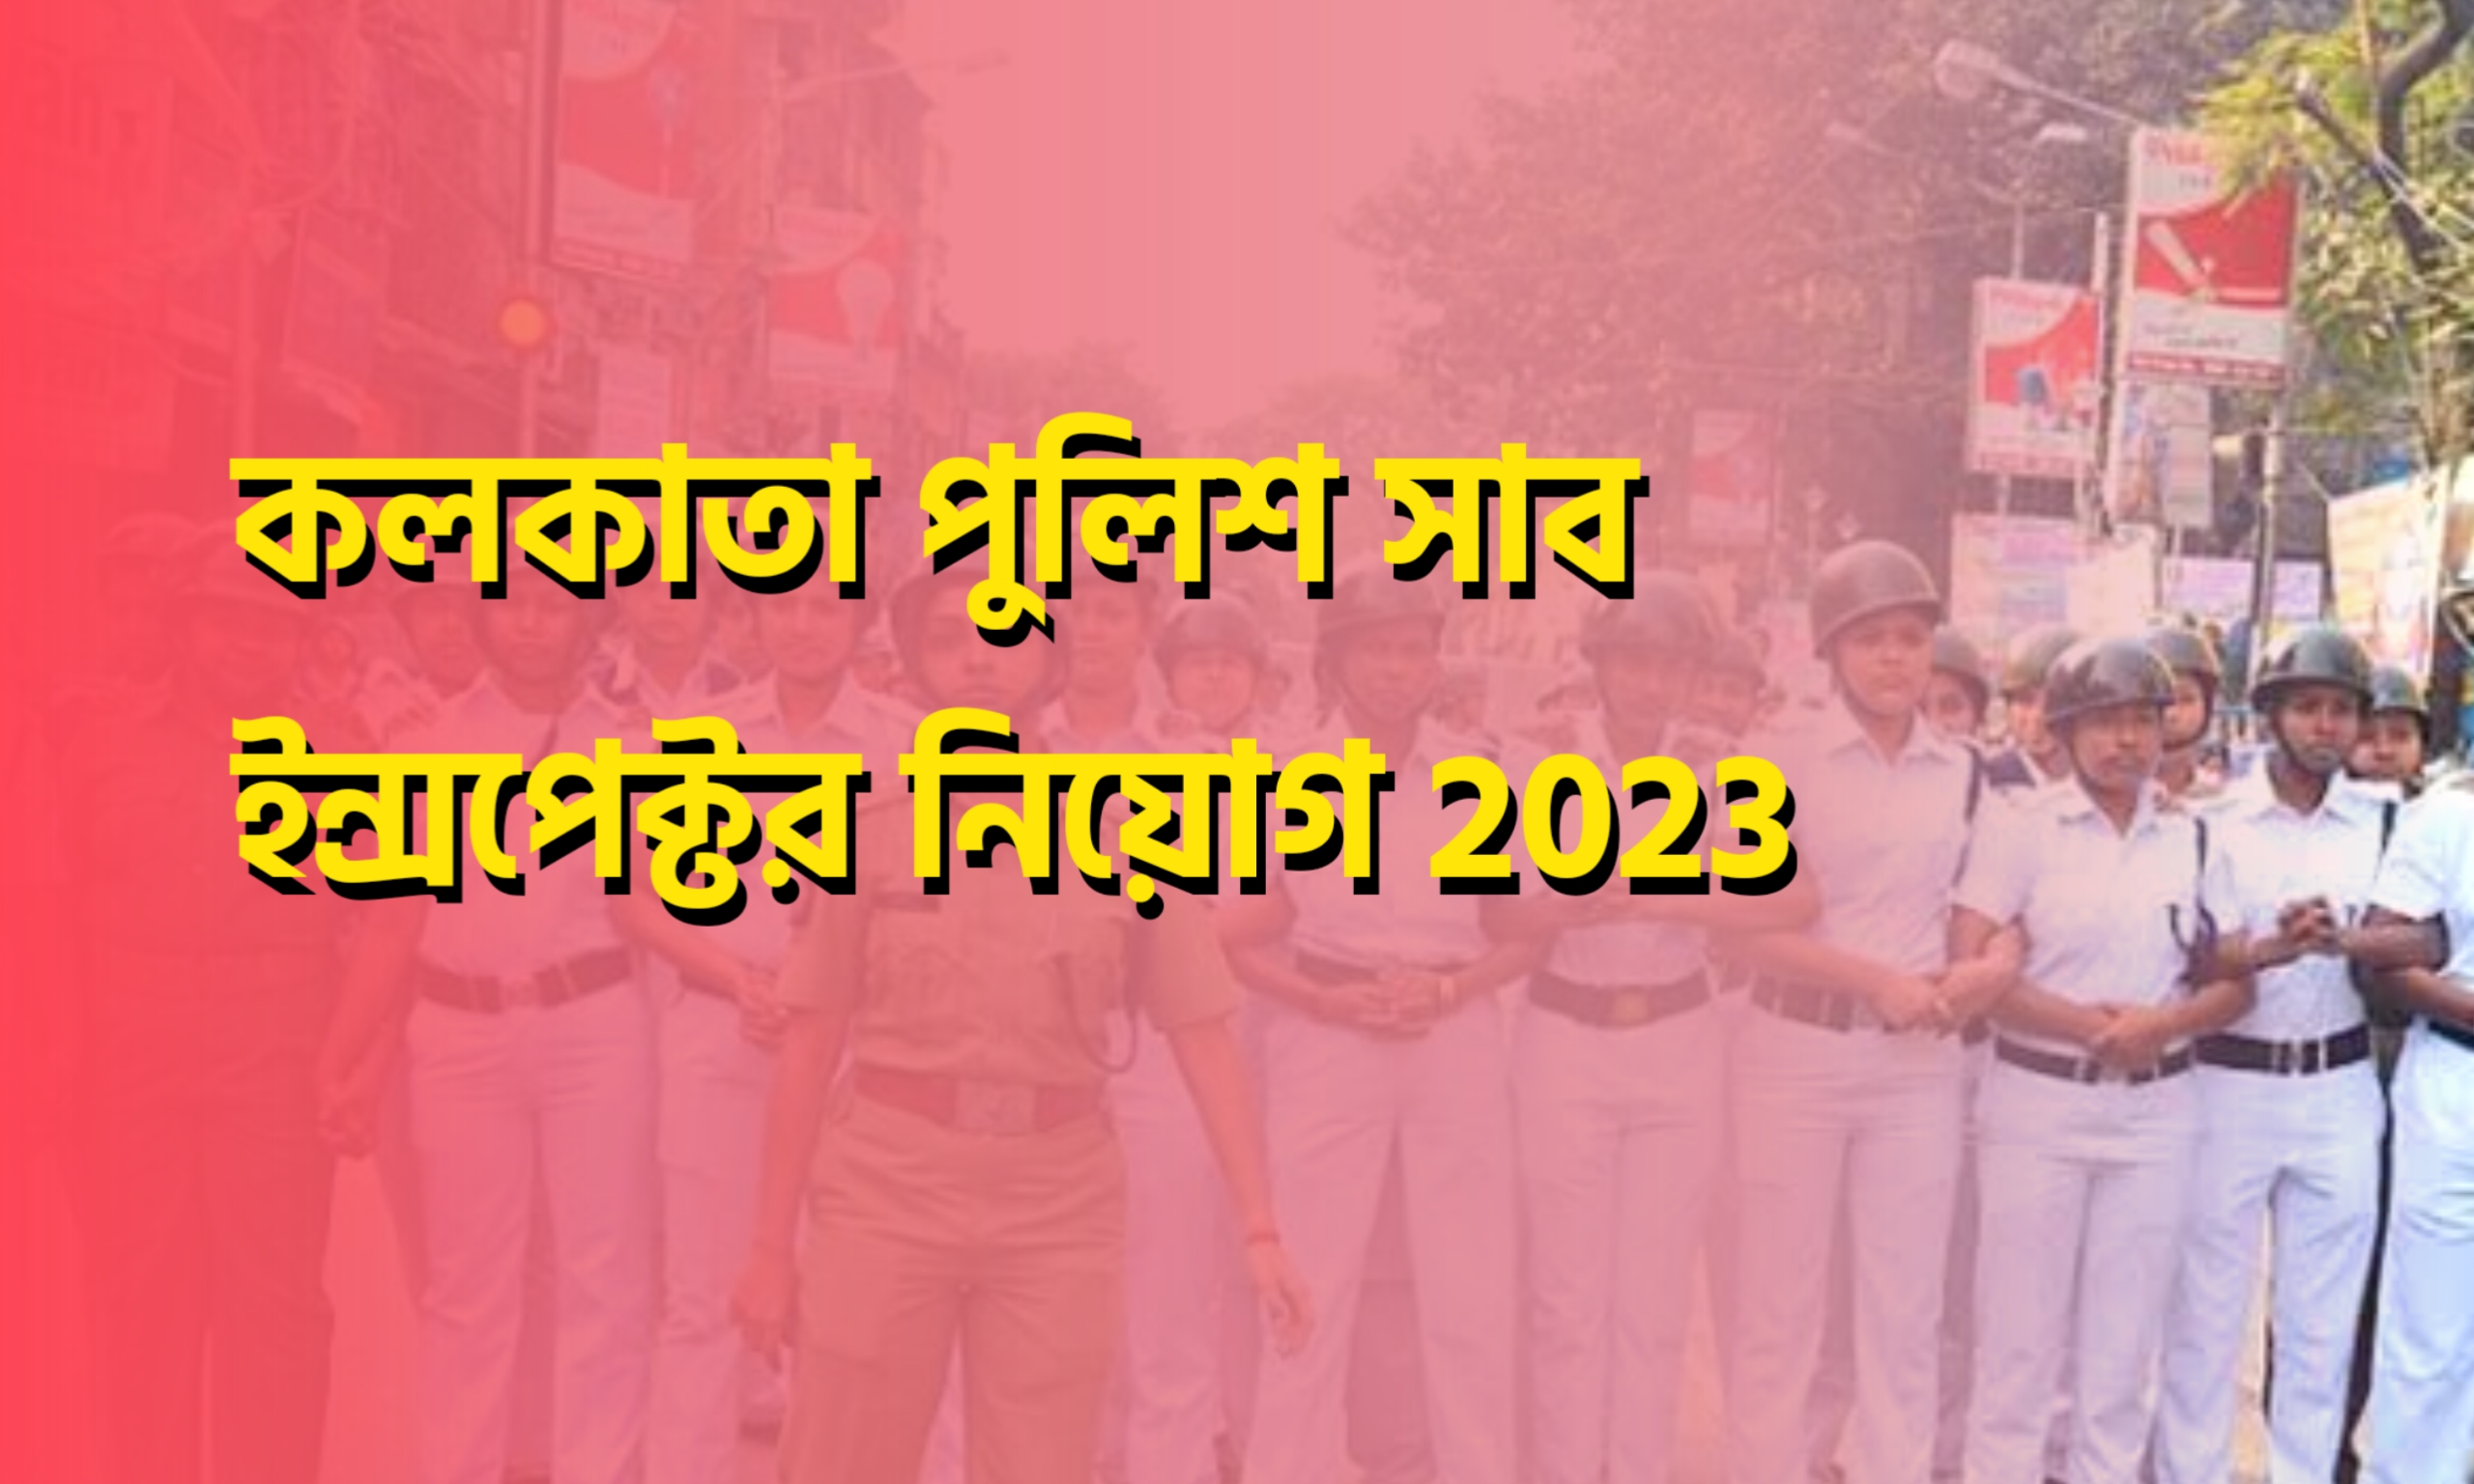 Kolkata Police SI Recruitment 2023